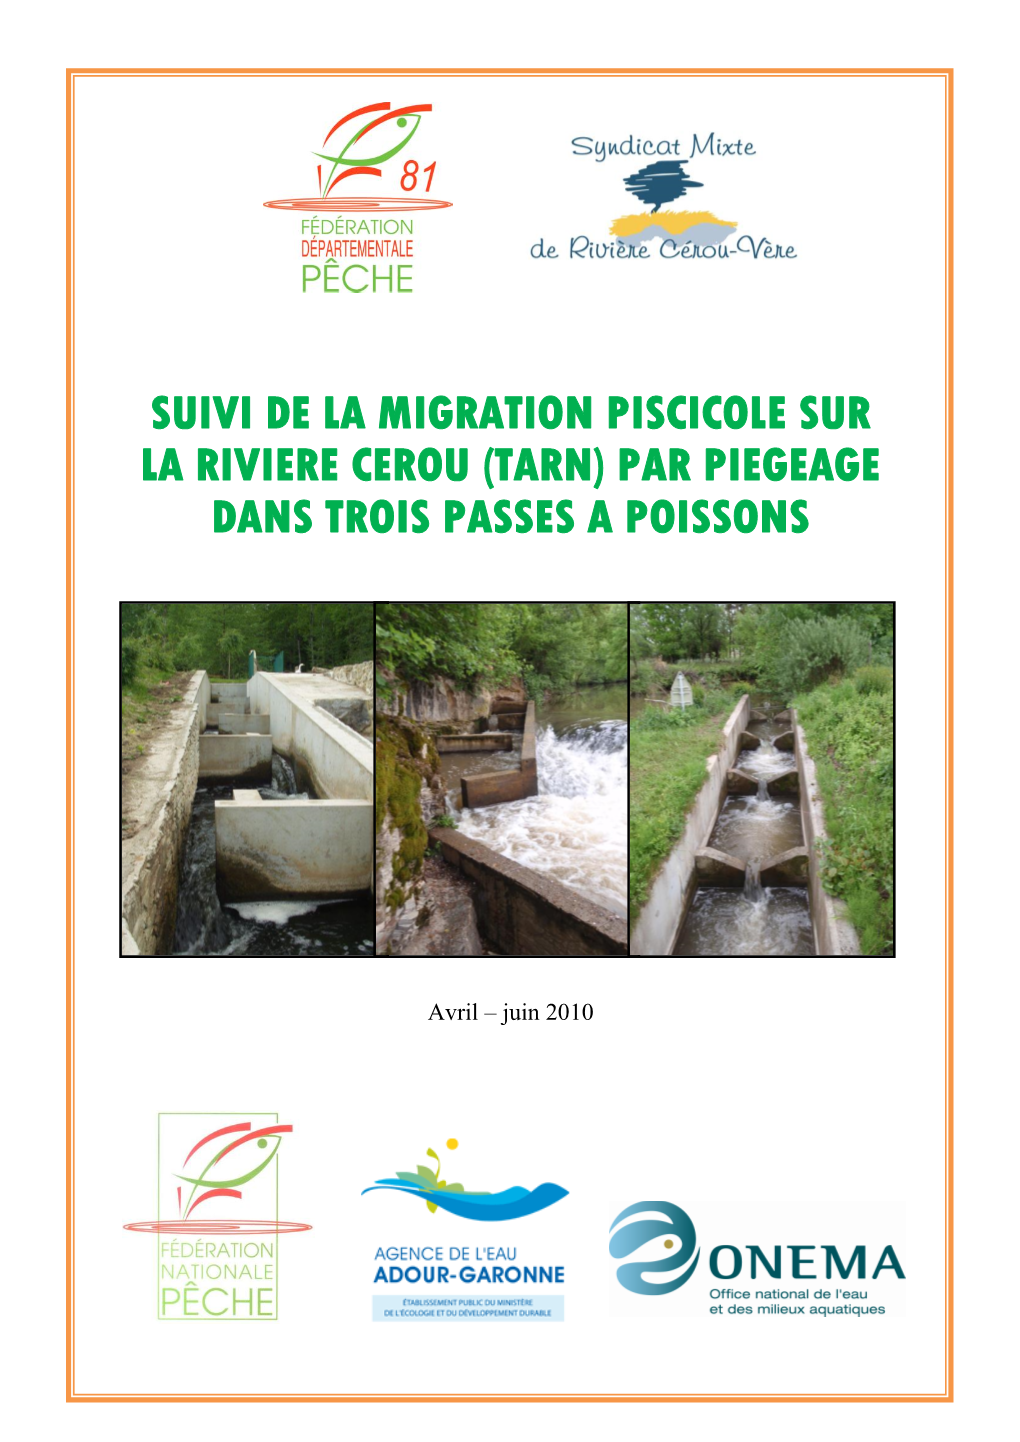 Suivi De La Migration Piscicole Sur La Riviere Cerou (Tarn) Par Piegeage Dans Trois Passes a Poissons